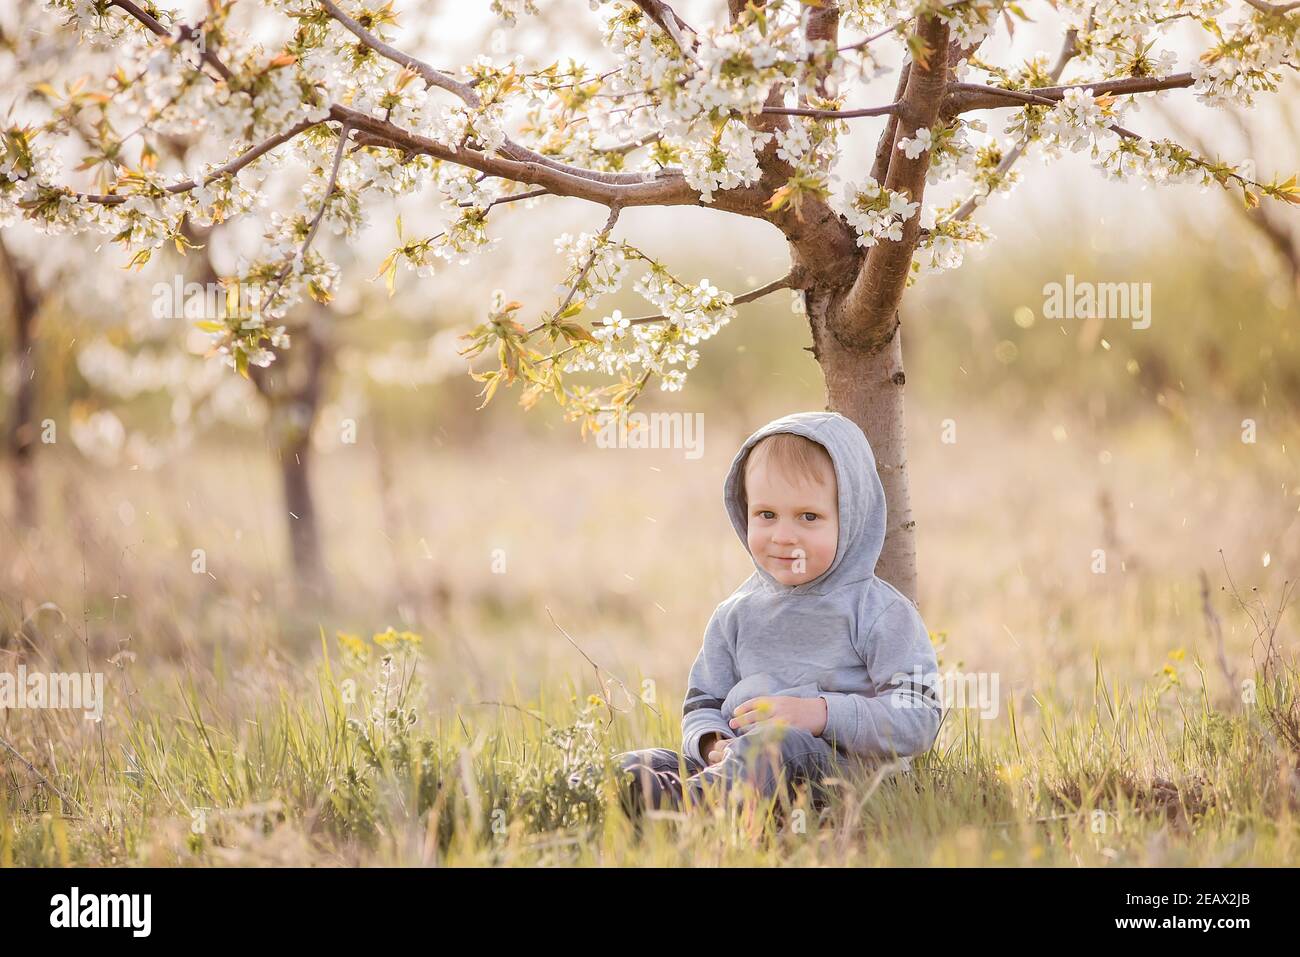 Piccolo ragazzo biondo in felpa grigia con un cappuccio sulla testa si siede in erba verde sotto albero fiorito con fiori bianchi, ride. Weekend di viaggio, picni Foto Stock